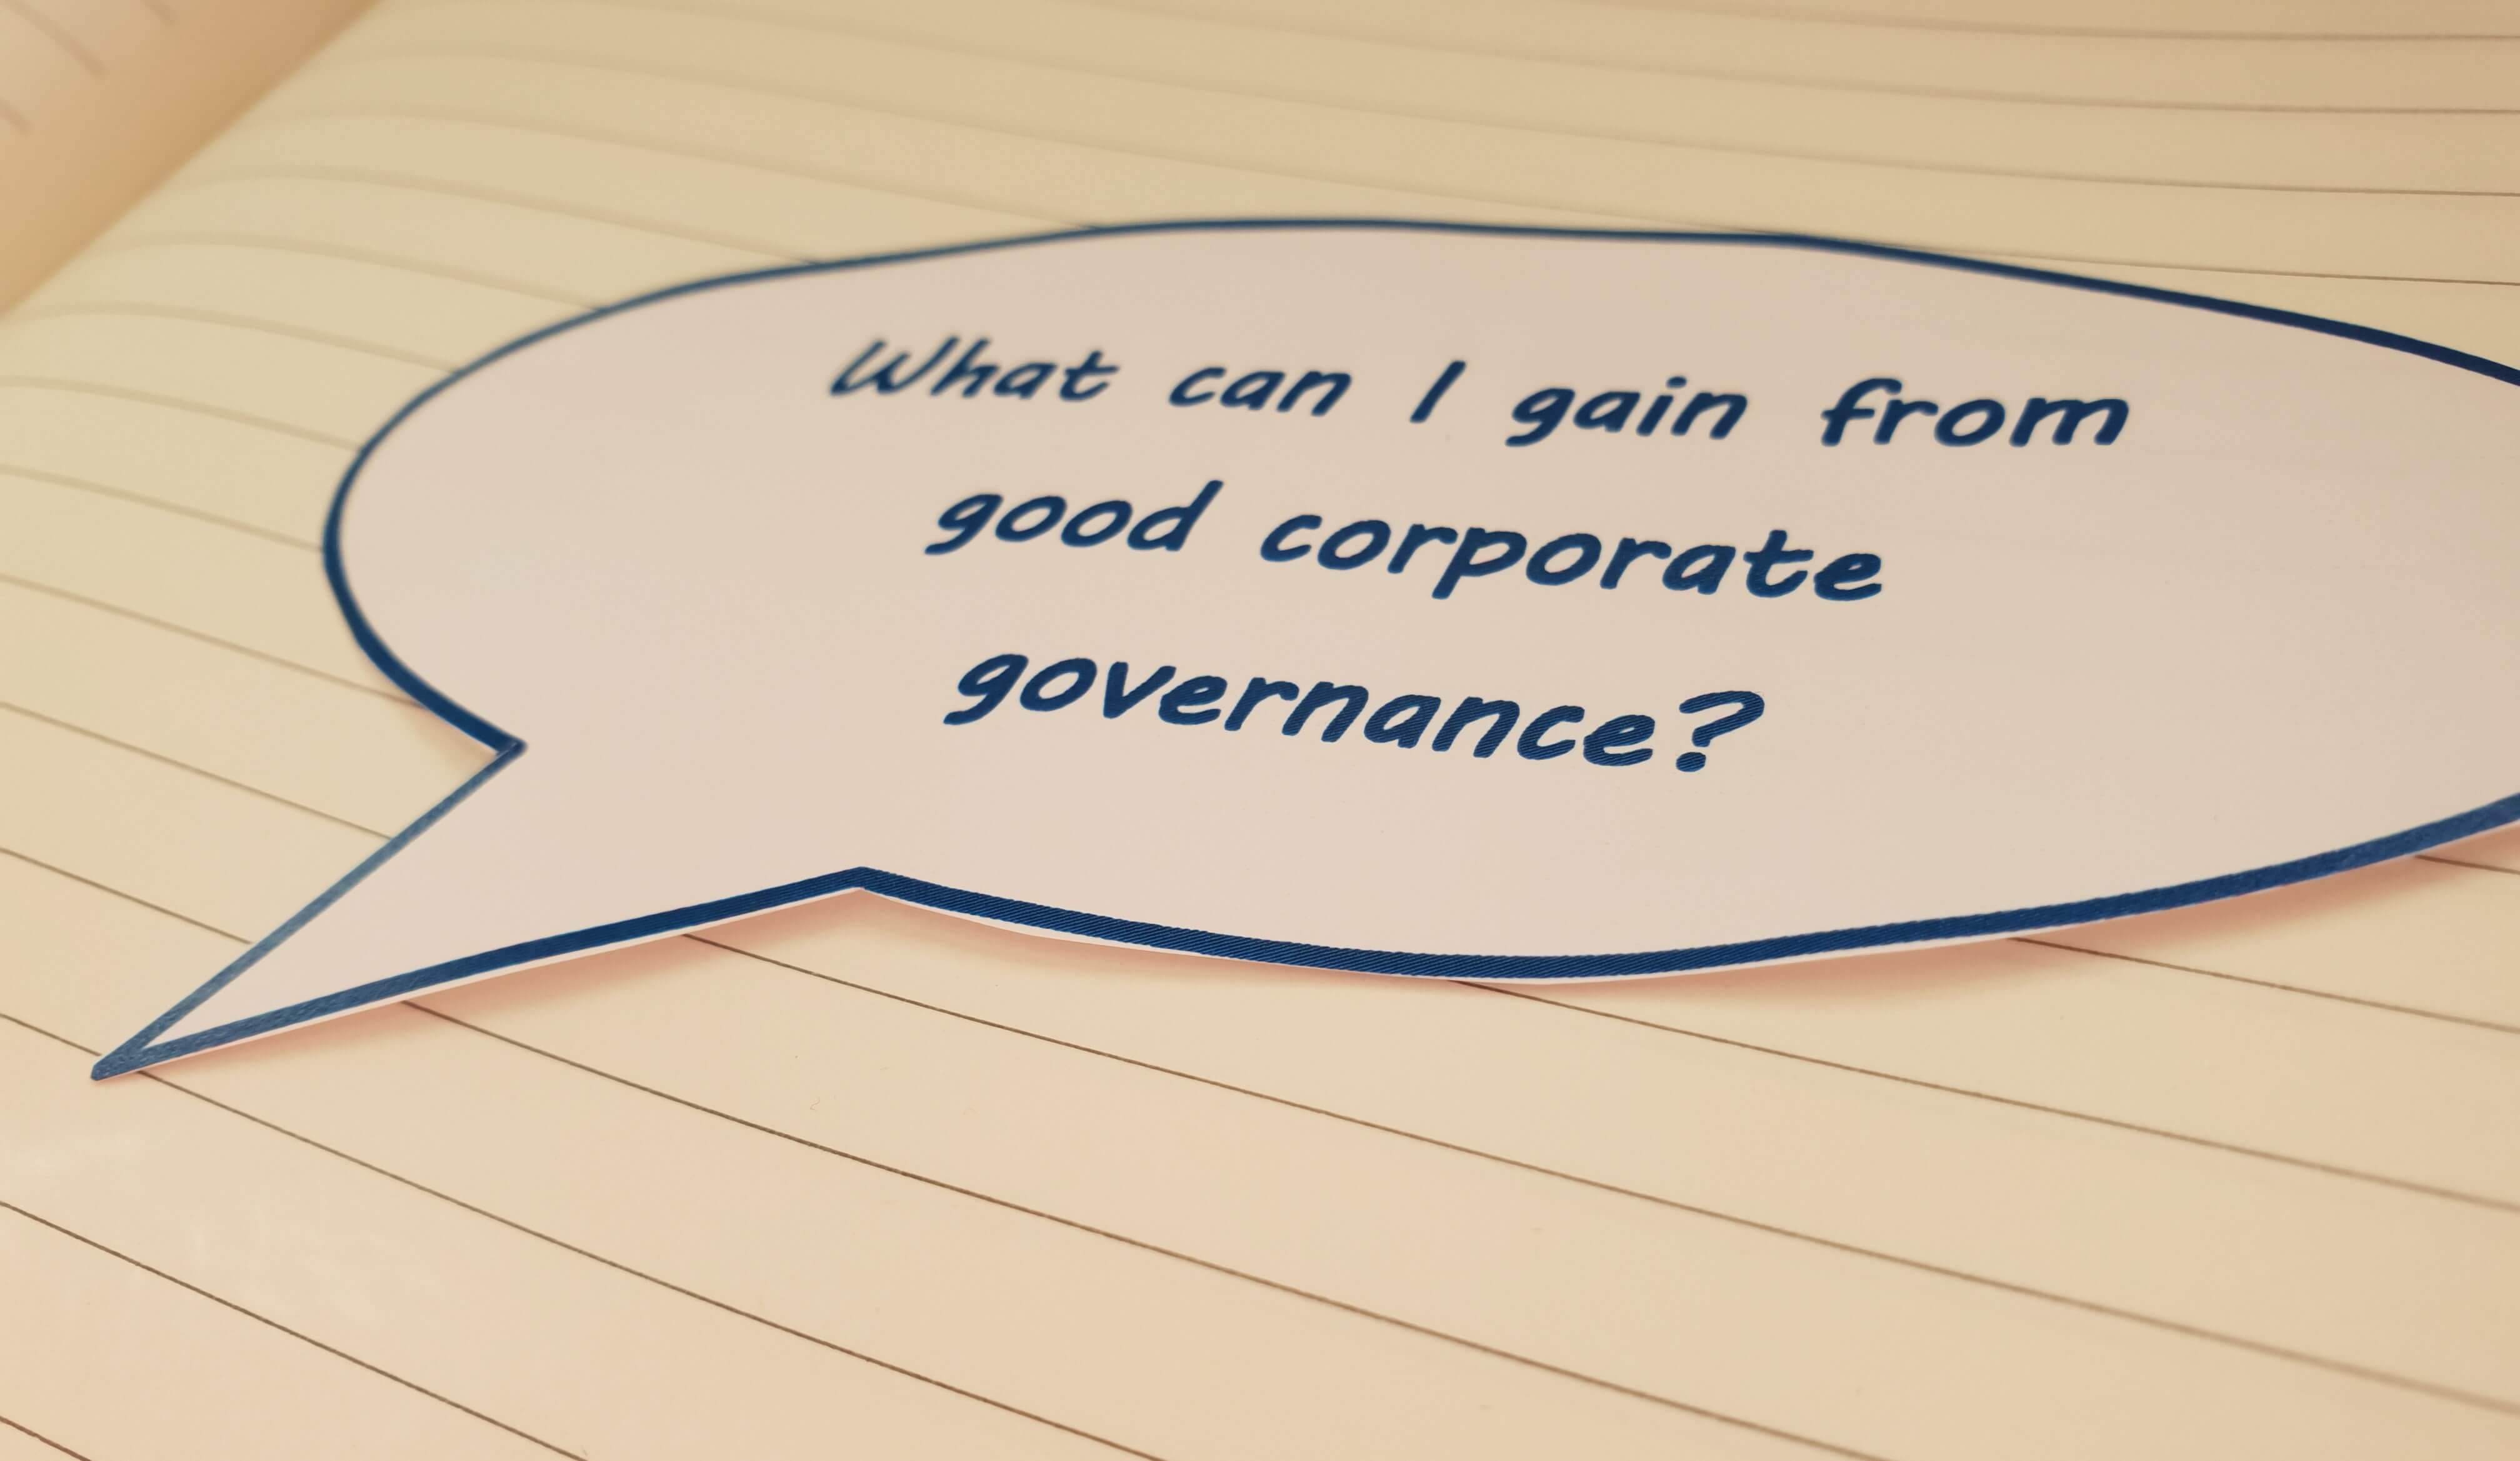 Nguyên tắc của Corporate Governance là gì